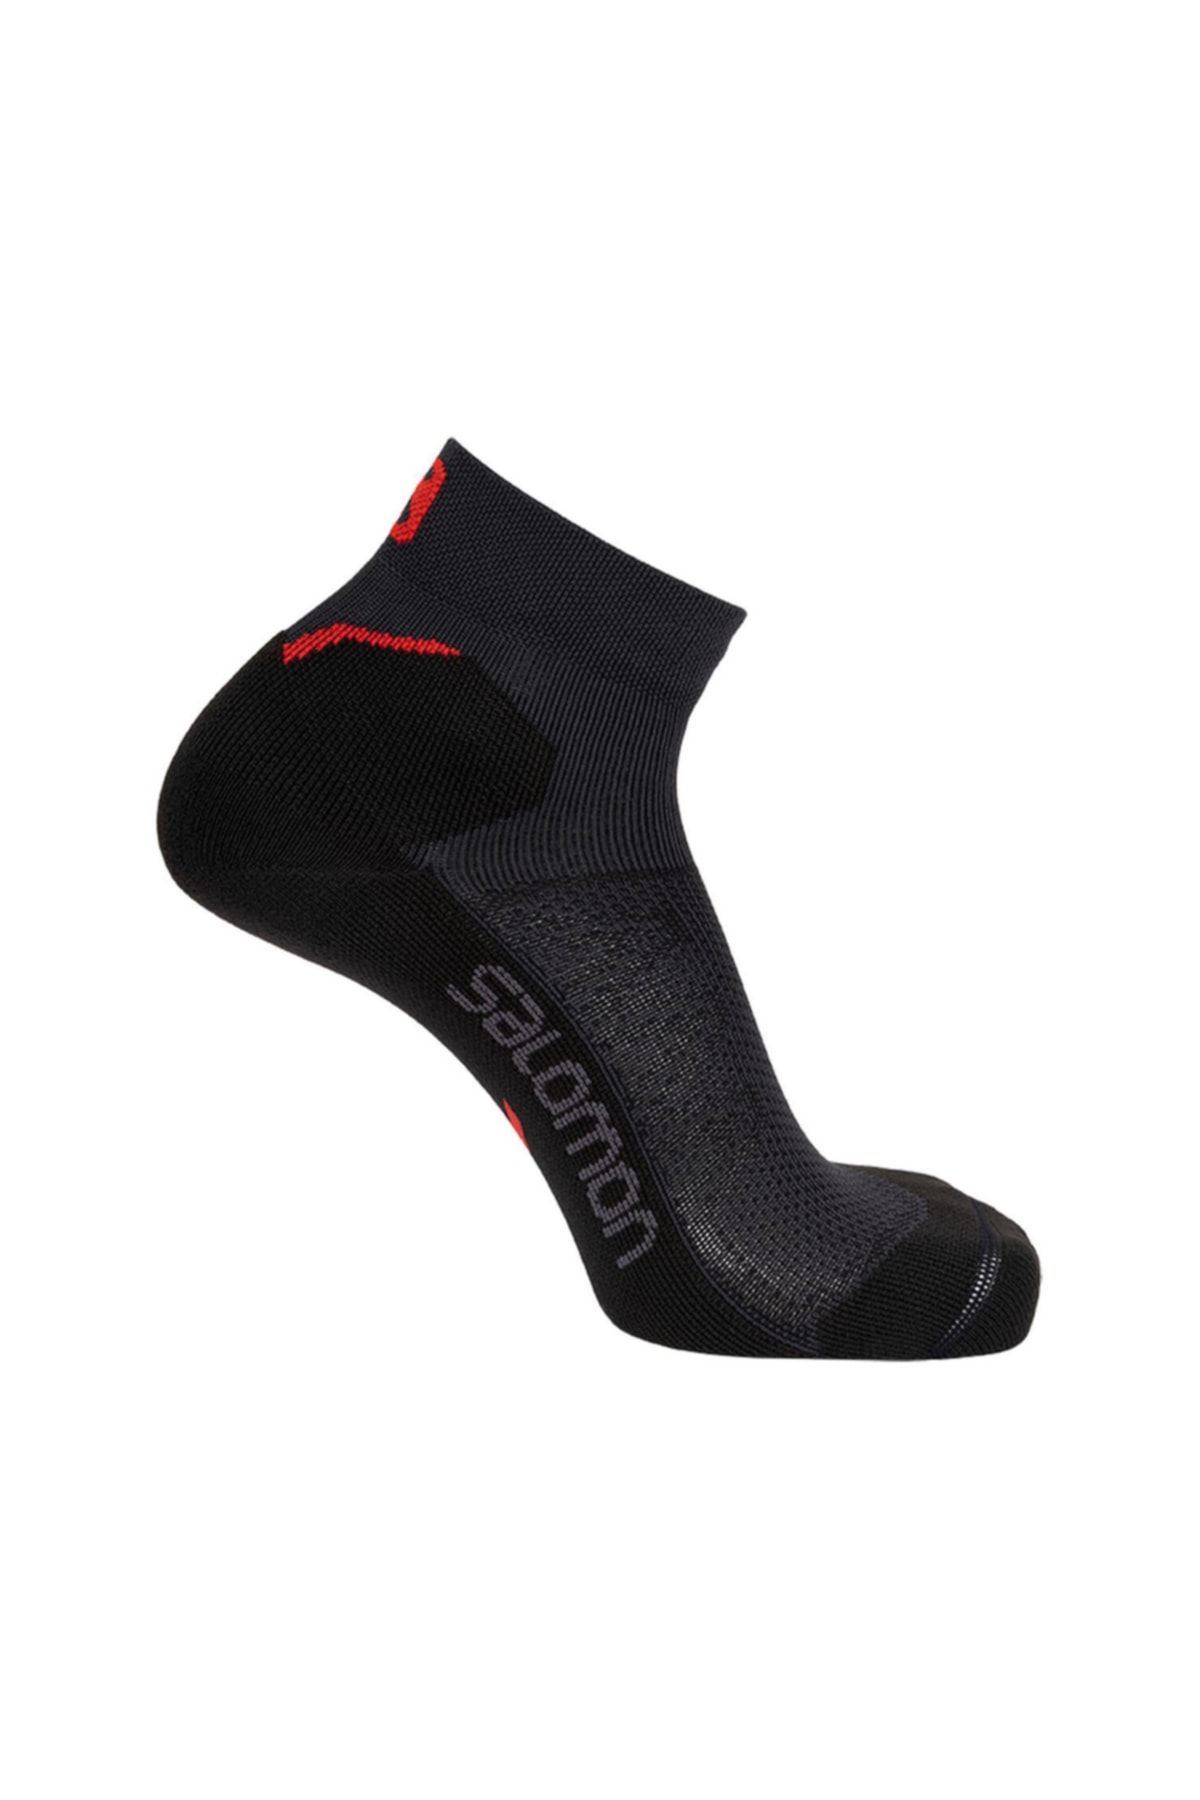 Salomon Çorap Speedcross Ankle Dx Sx Lc1780900